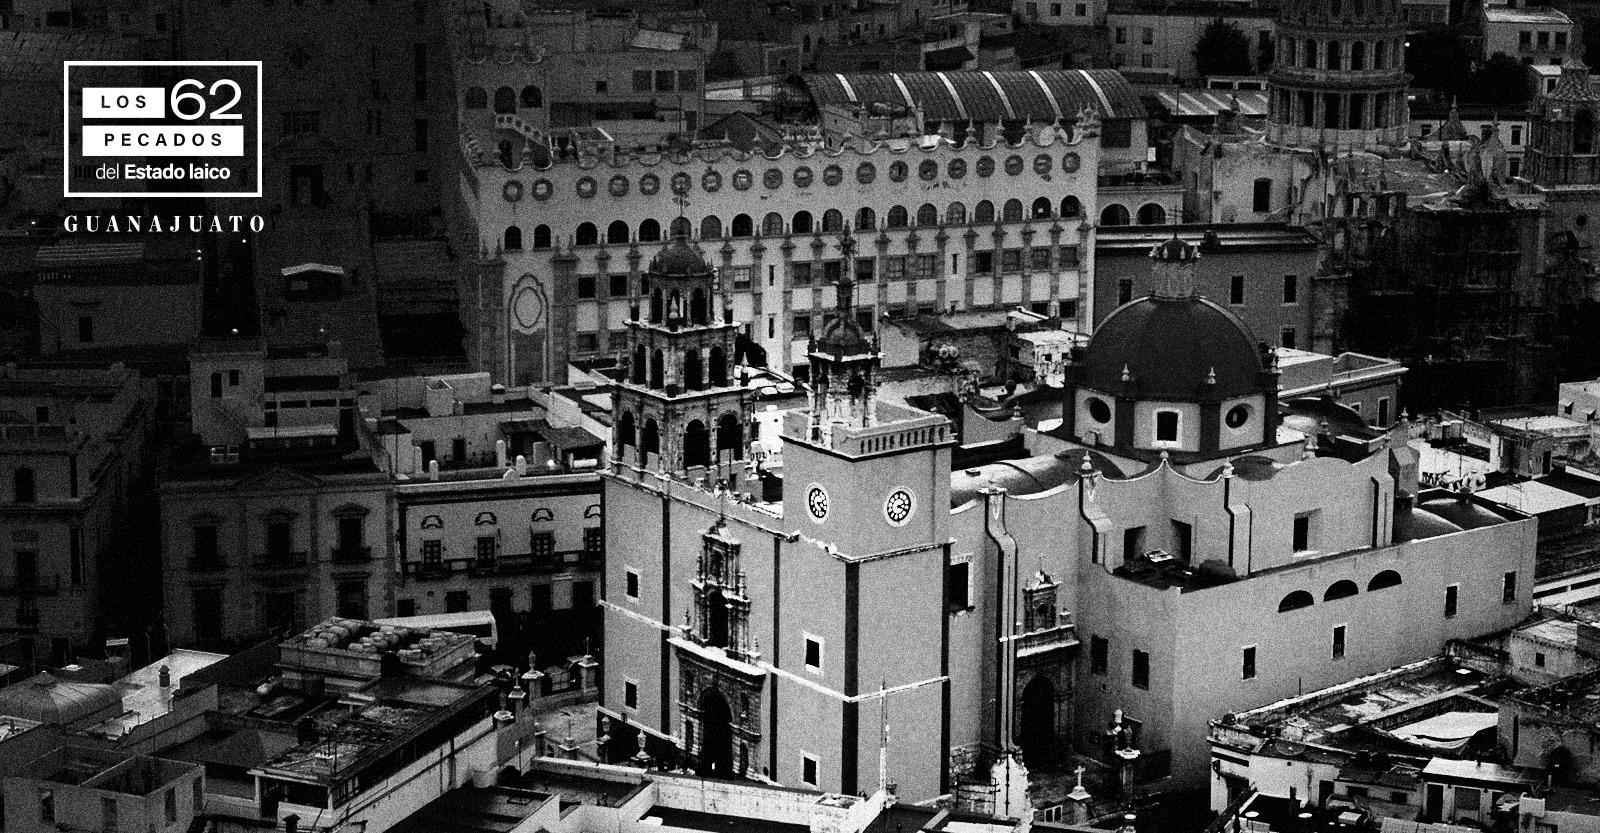 Los 62 pecados del Estado laico: Guanajuato da 103 mdp en terrenos a la Iglesia para evangelizar